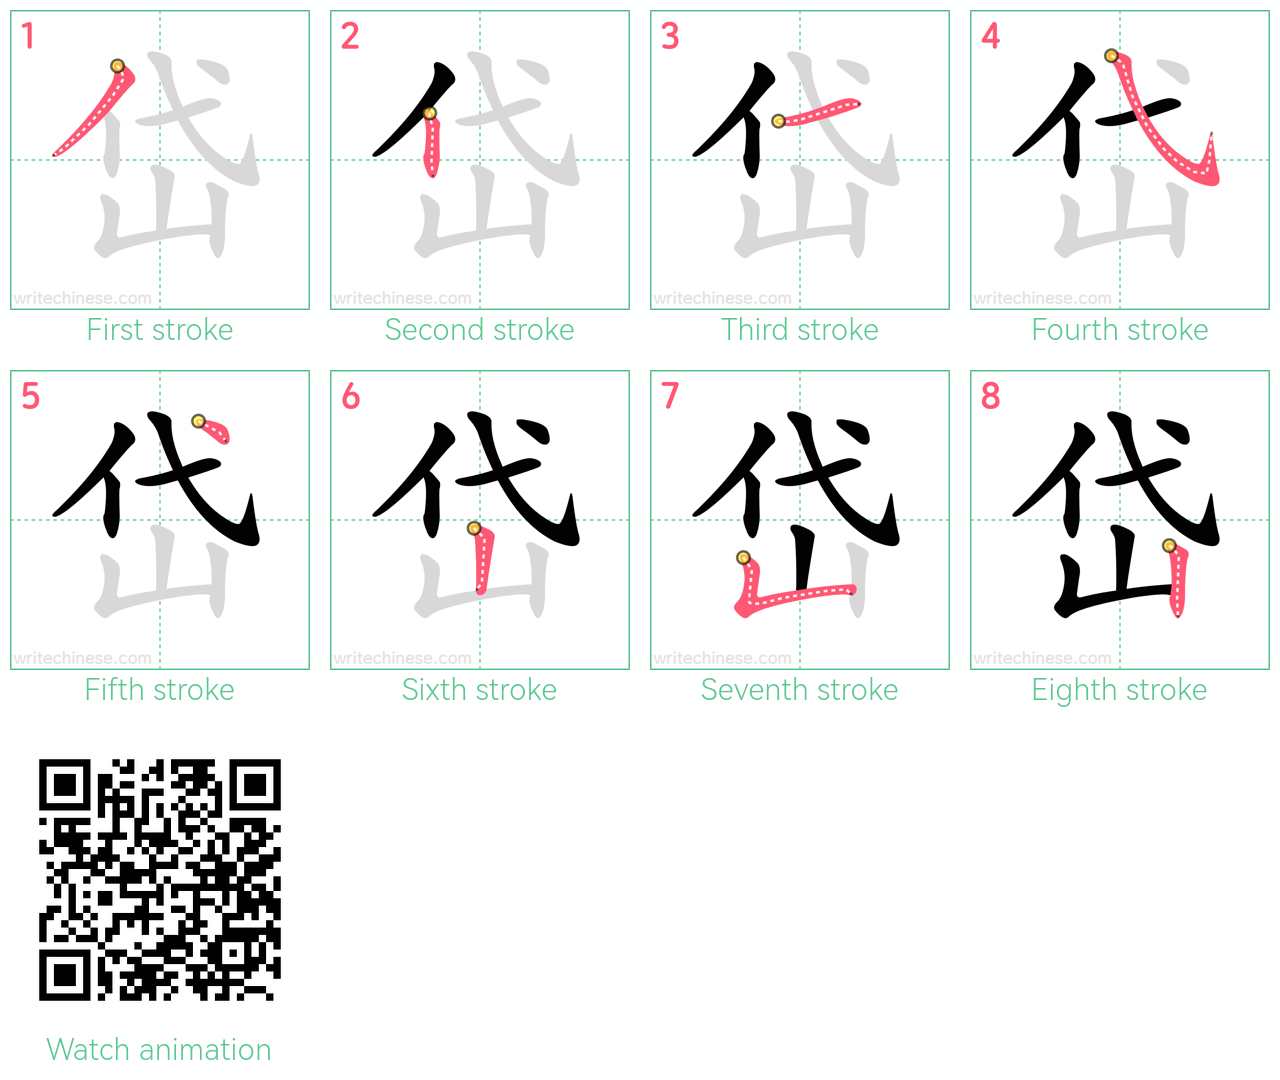 岱 step-by-step stroke order diagrams